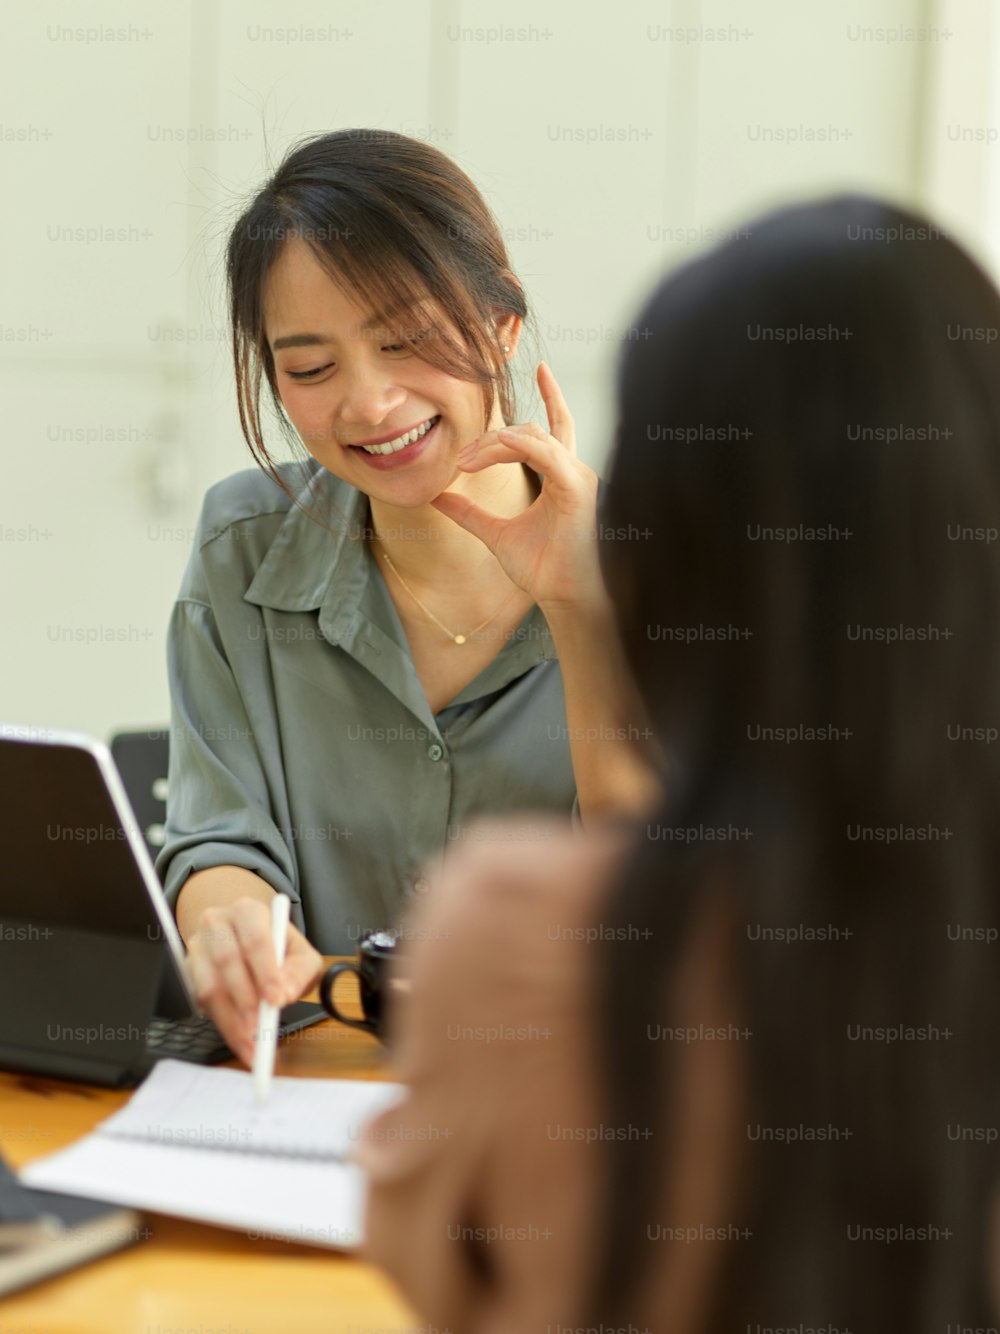 Ausschnittaufnahme von lächelnden Arbeiterinnen, die mit einer Kollegin sprechen und auf ein leeres Notizbuch im Besprechungsraum zeigen